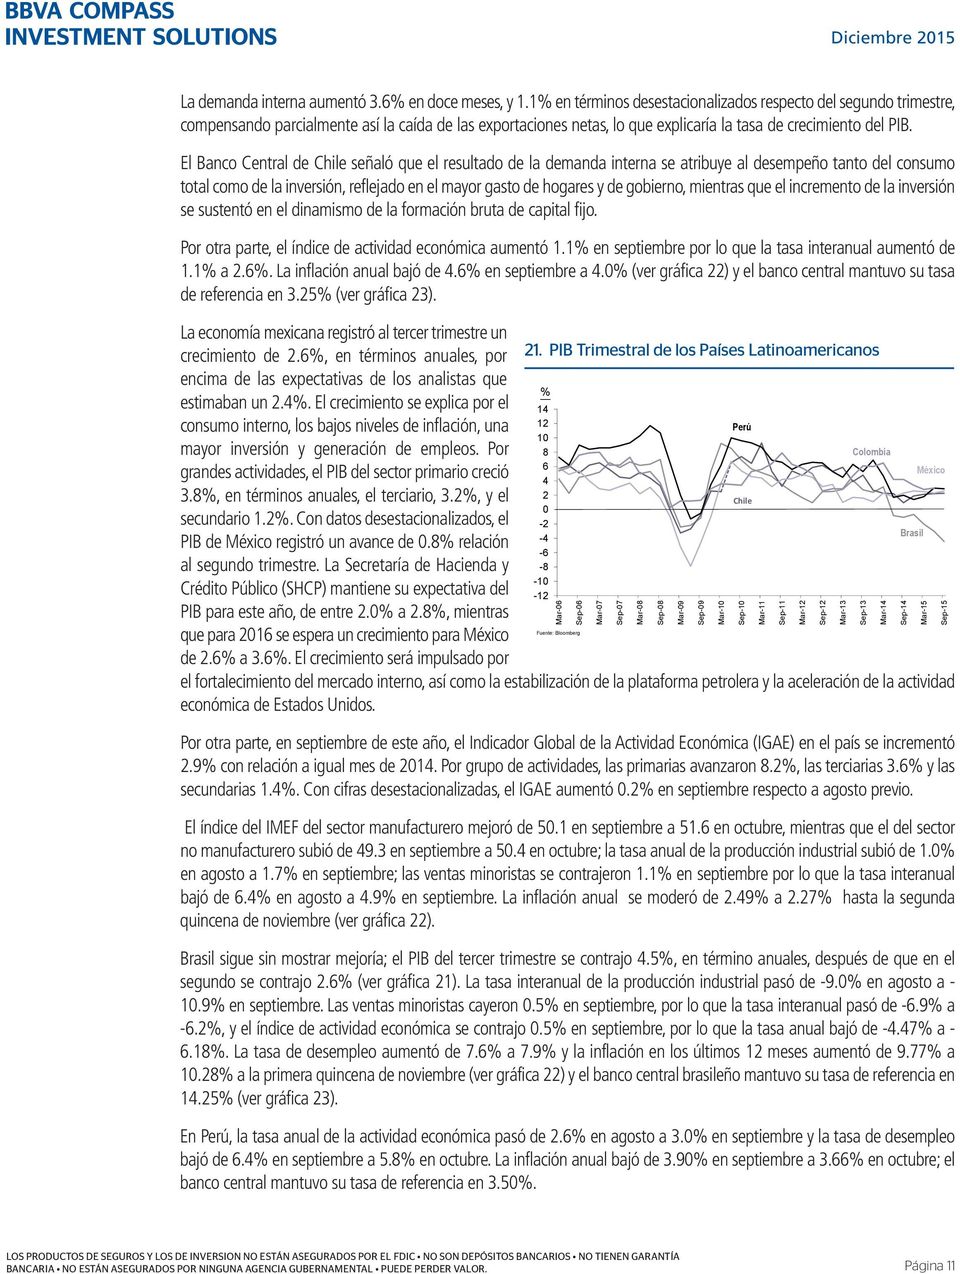 El Banco Central de Chile señaló que el resultado de la demanda interna se atribuye al desempeño tanto del consumo total como de la inversión, reflejado en el mayor gasto de hogares y de gobierno,